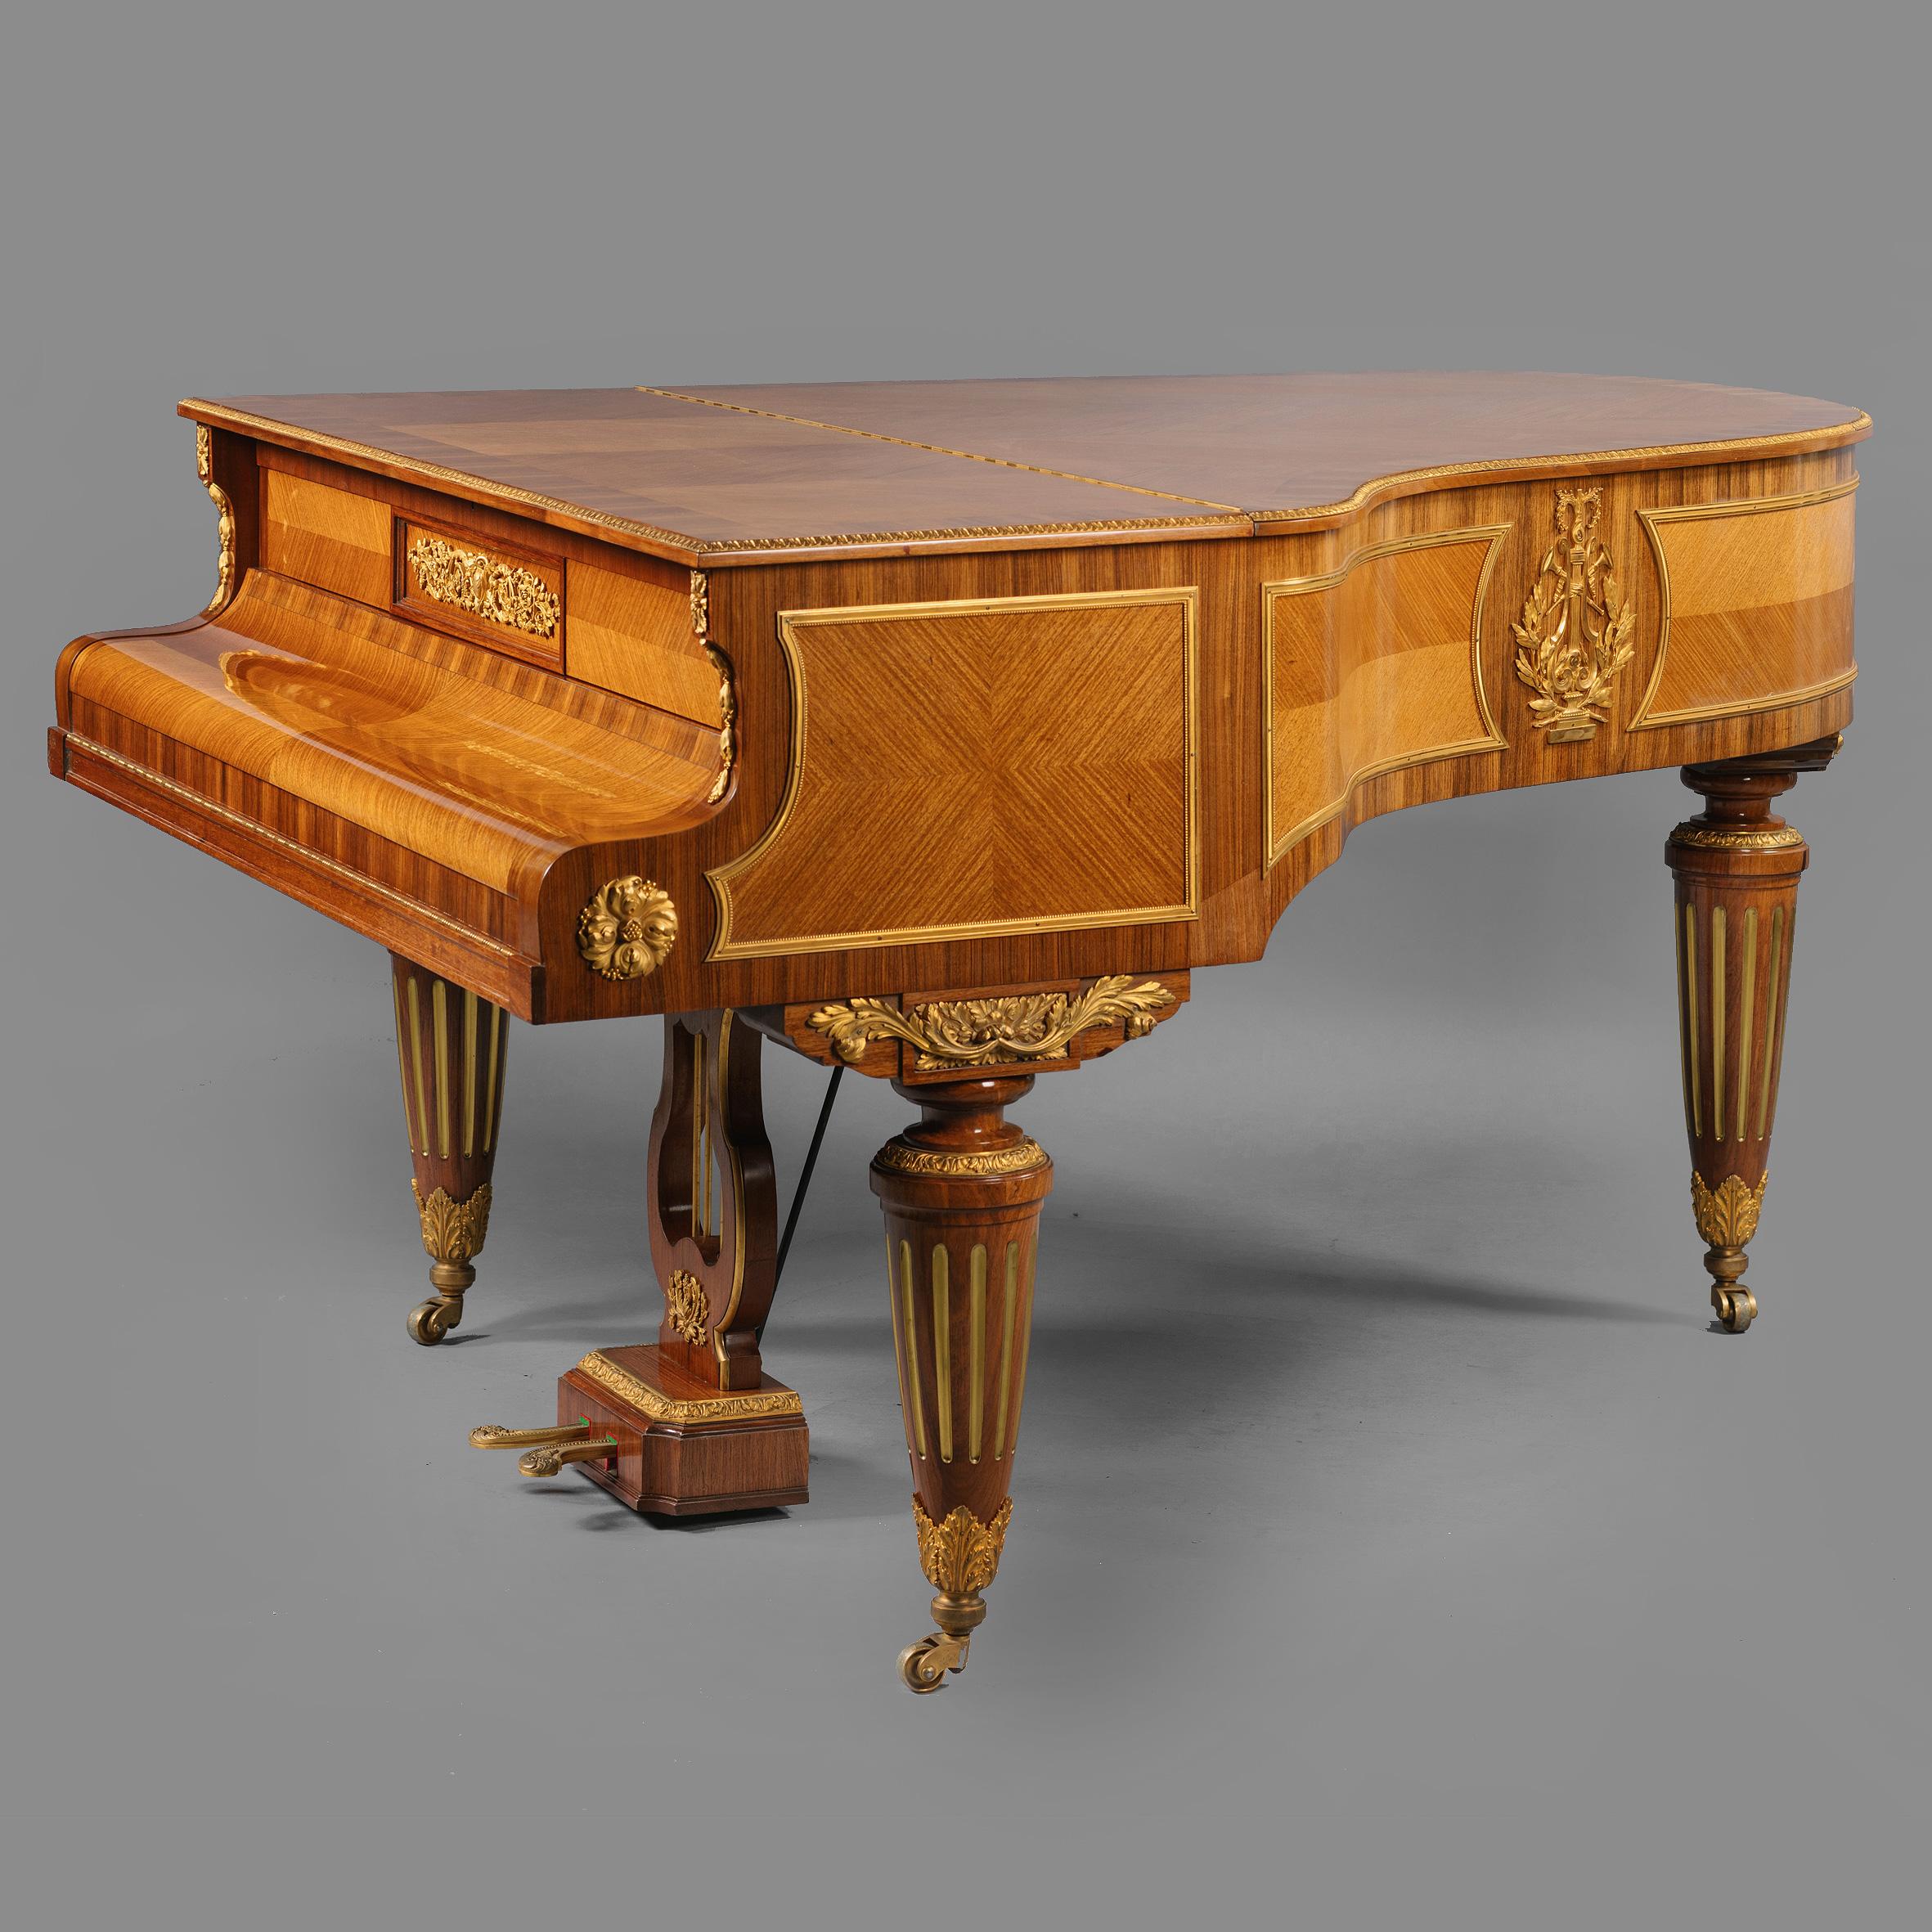 Un beau piano à queue de style Louis XVI monté en bronze doré par Gaveau à Paris. 

Numéro de série 67874.

Ce beau piano à queue pour bébé a un dessus en placage de bois avec une bordure moulée à feuilles raides au-dessus de panneaux de frise